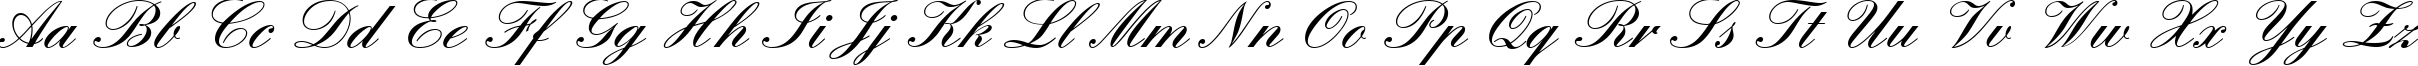 Пример написания английского алфавита шрифтом EnglischeSchTDemBol